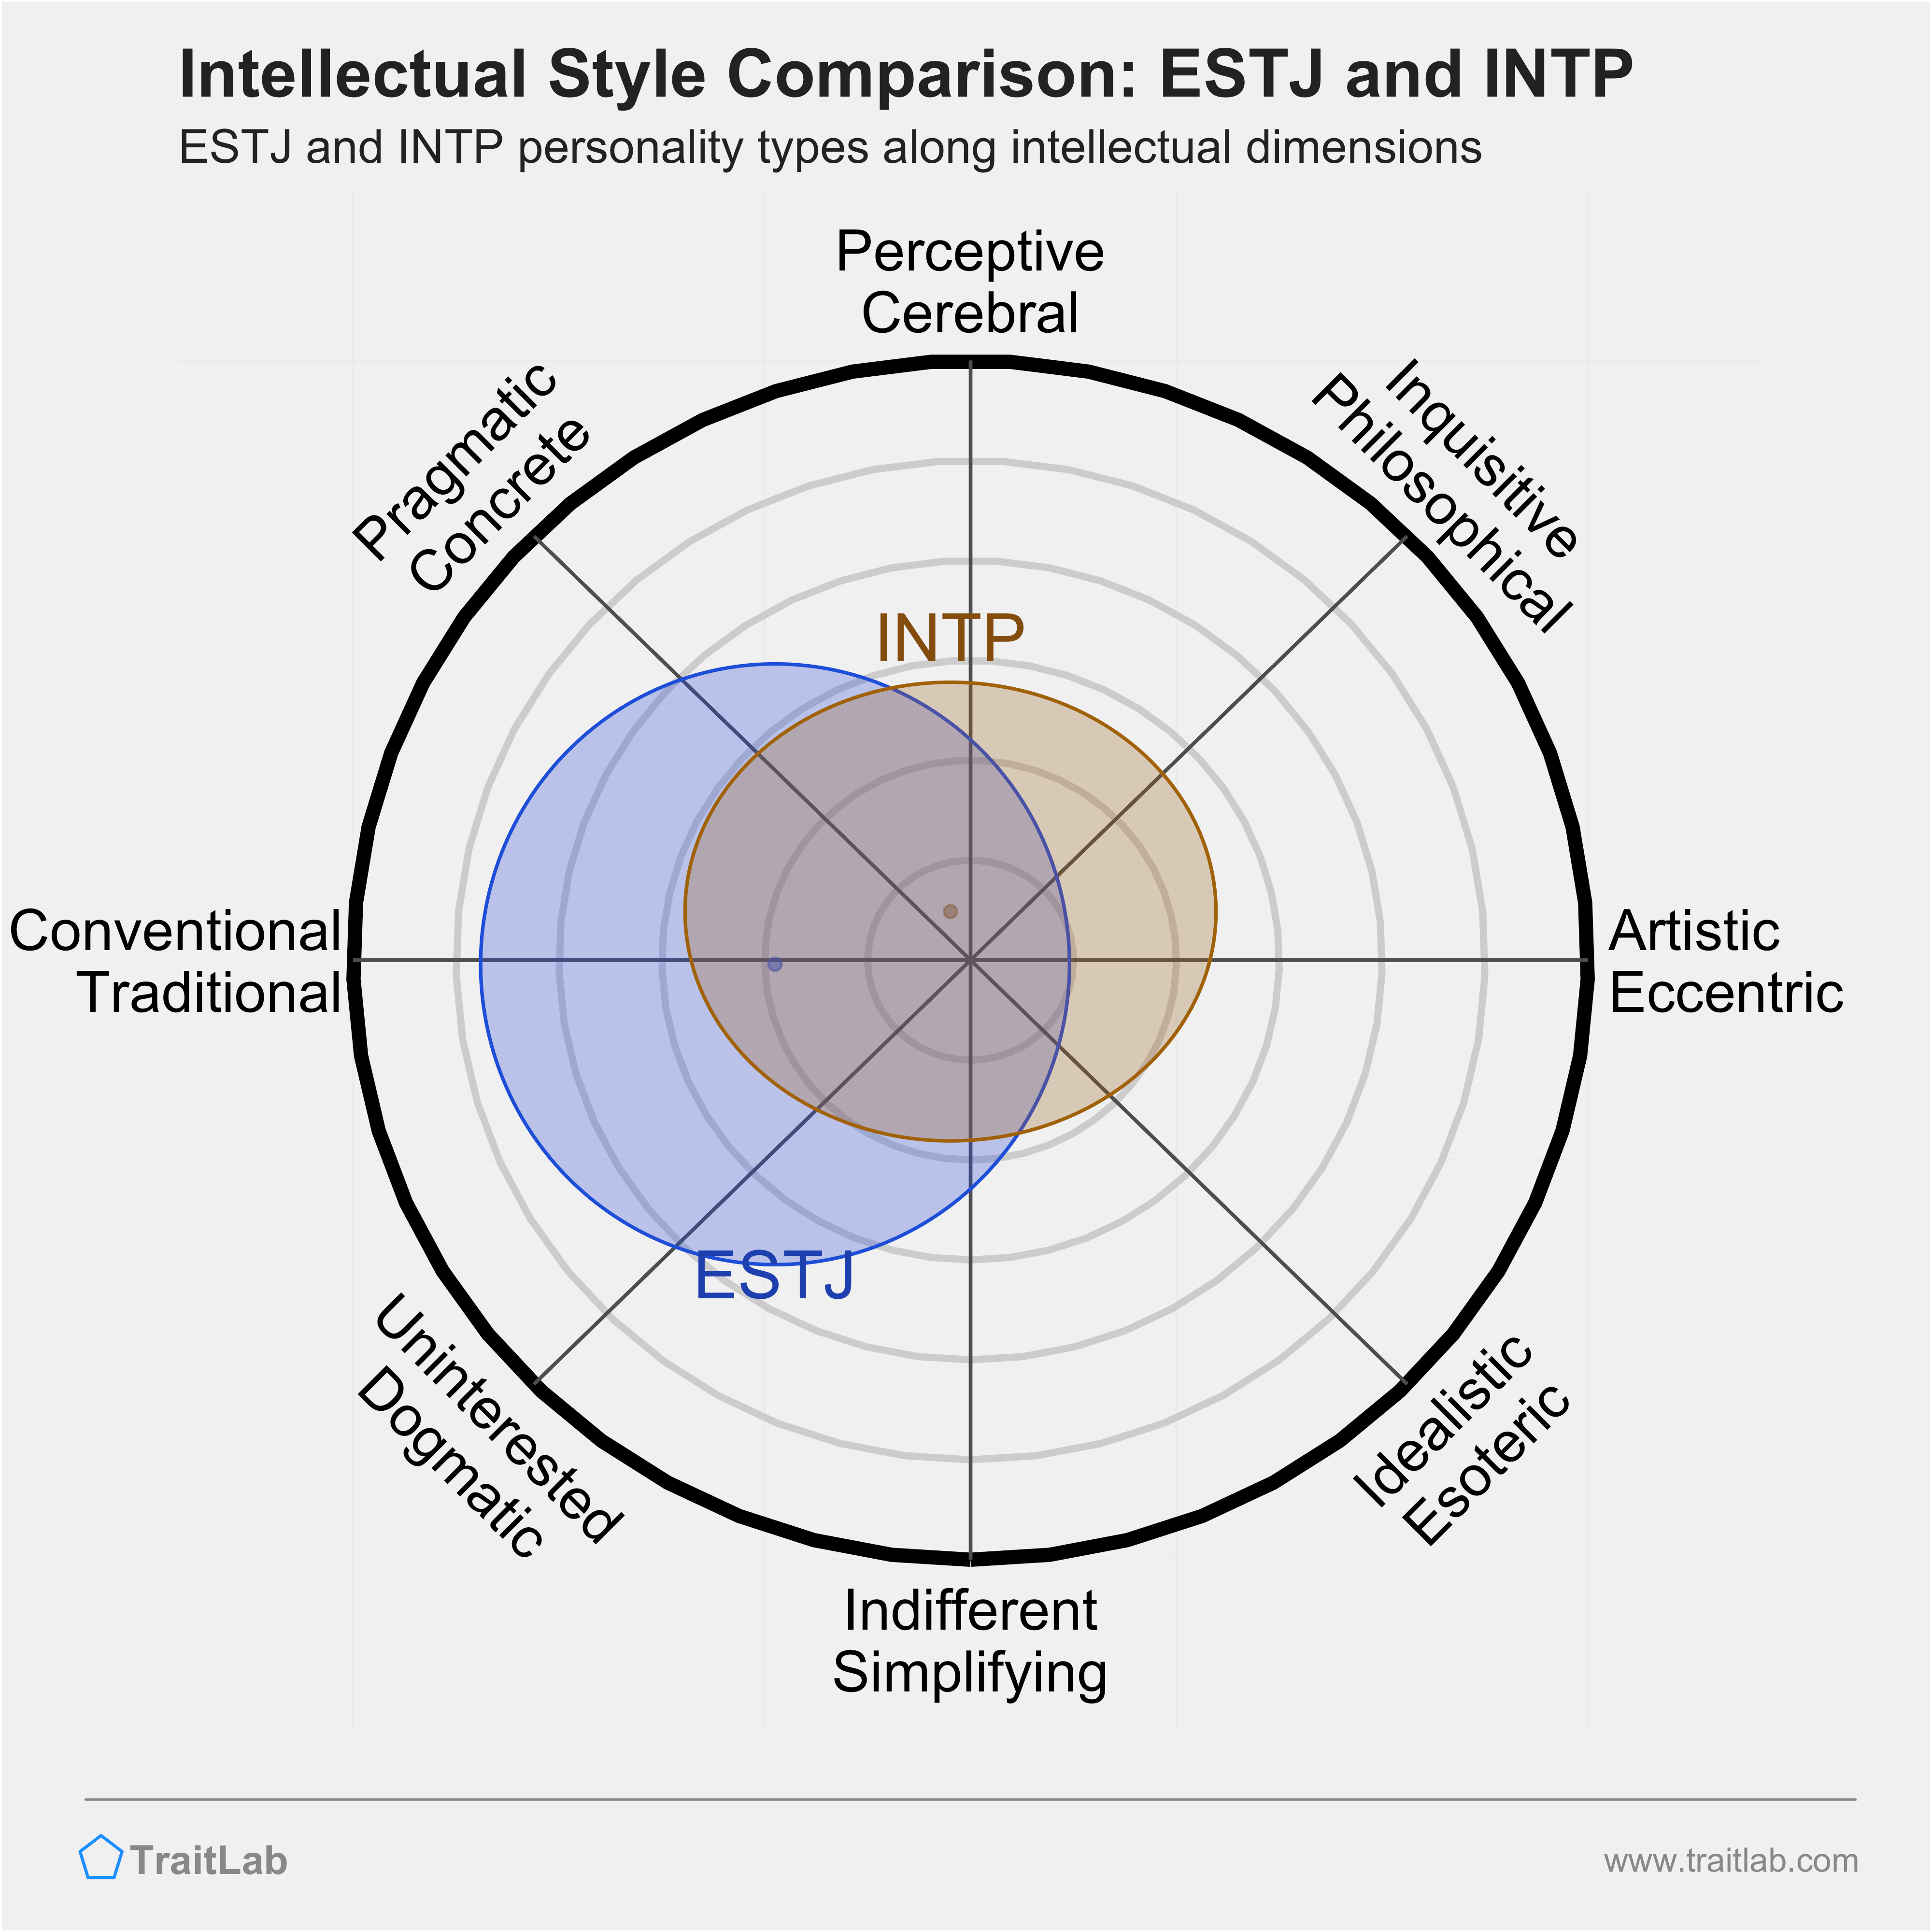 ESTJ and INTP comparison across intellectual dimensions